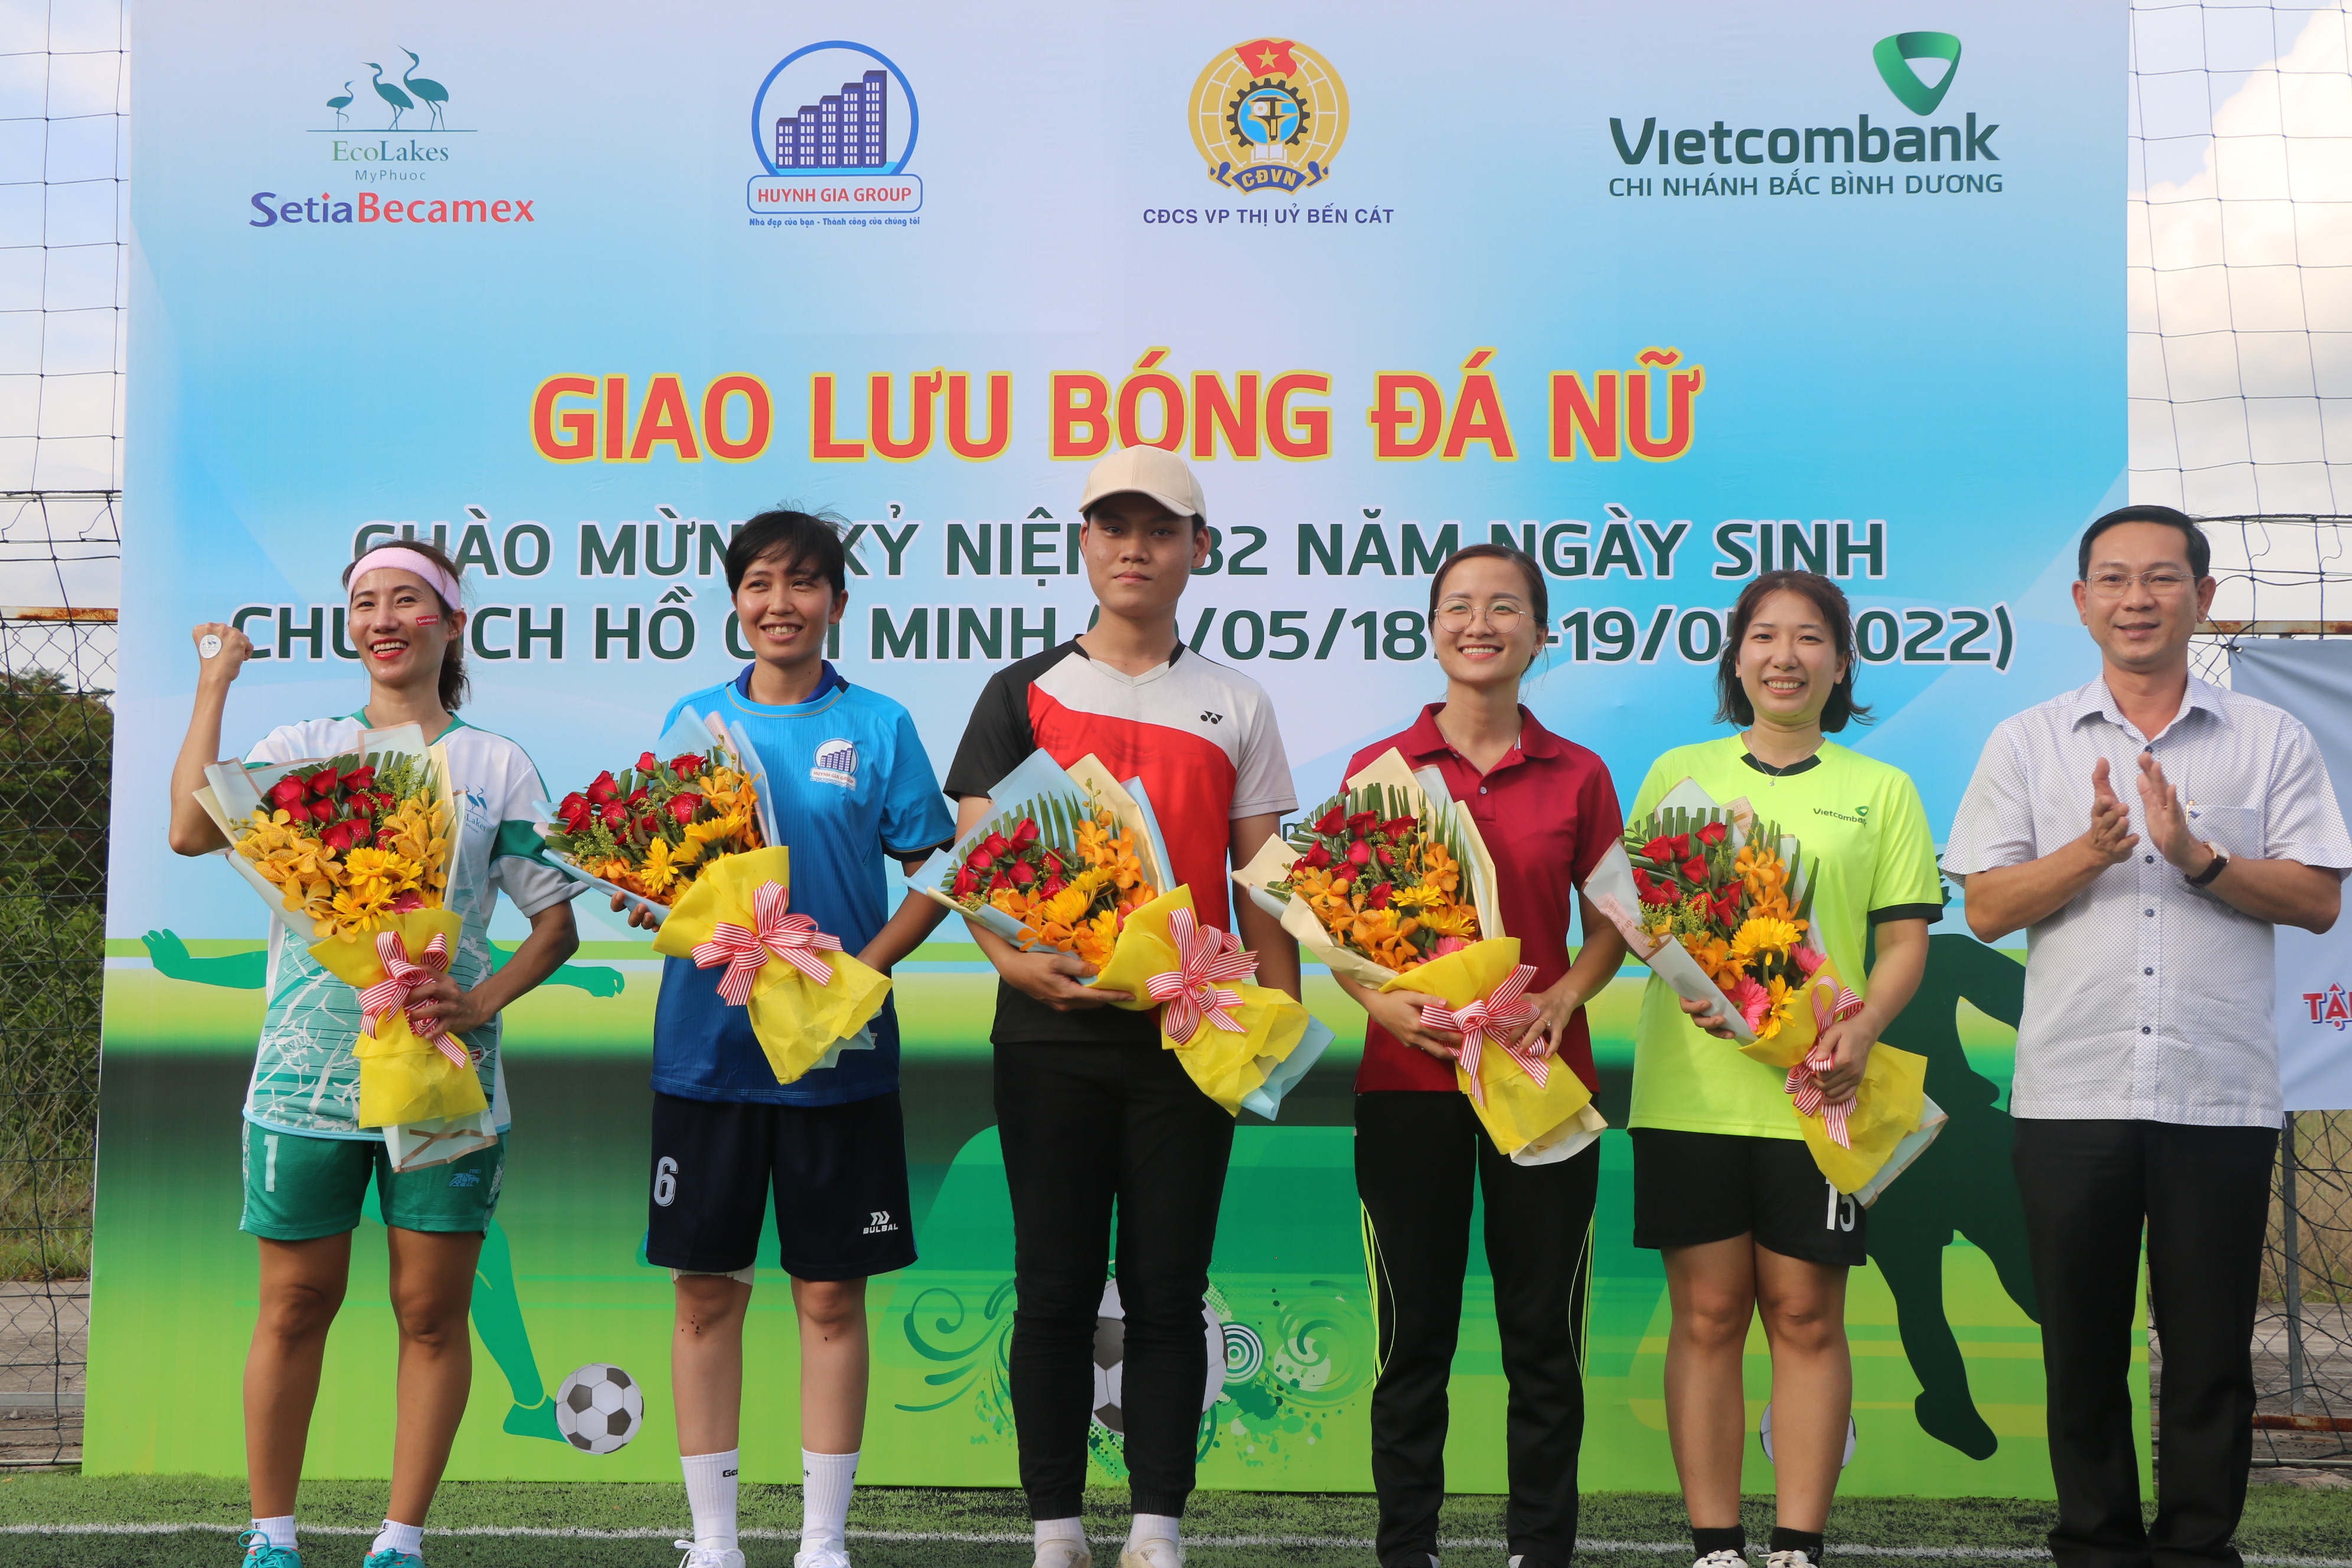  Vietcombank Bắc Bình Dương tổ chức giải bóng đá nữ